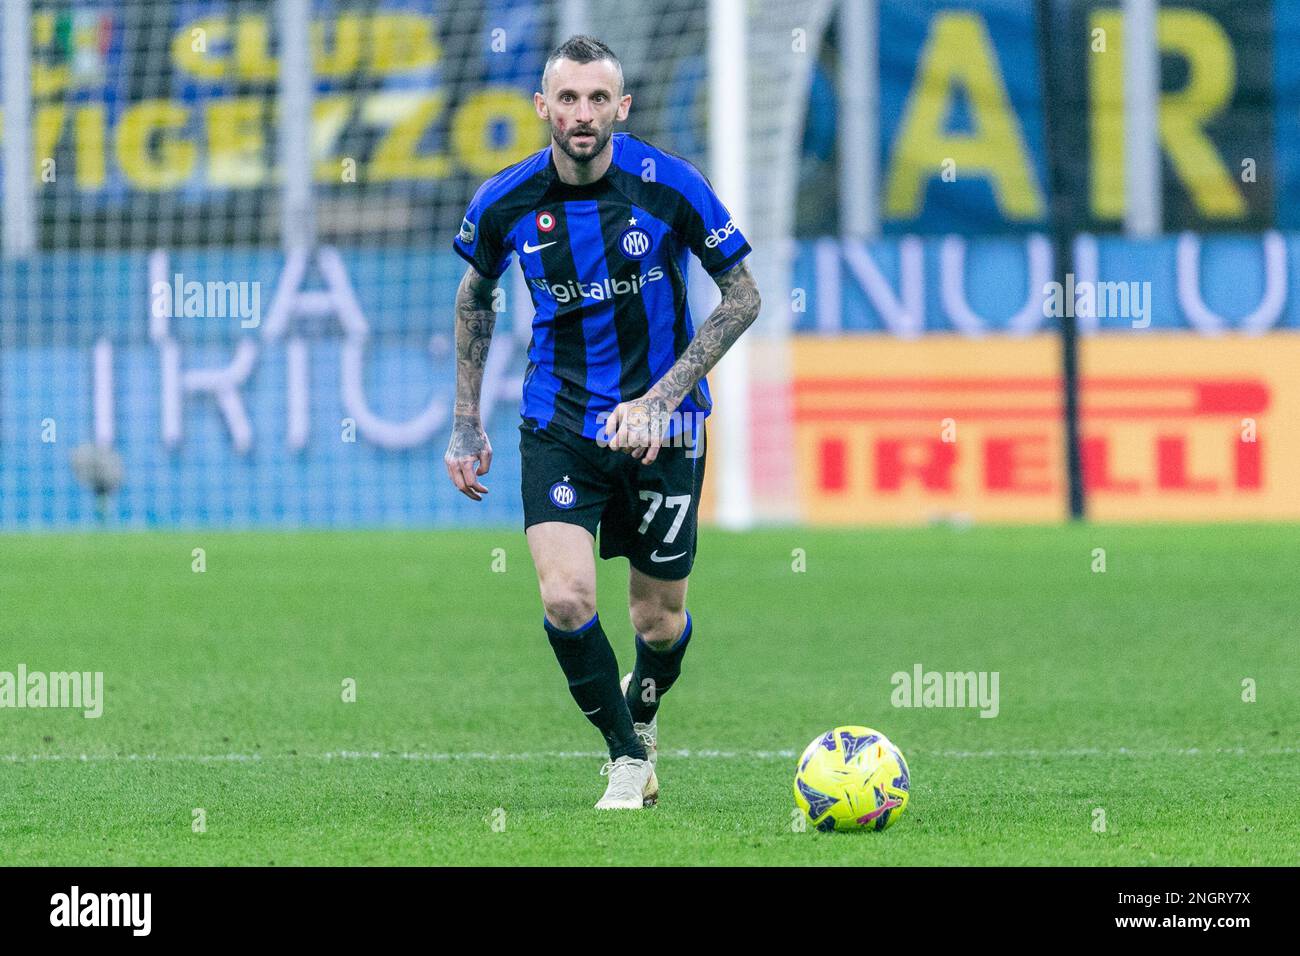 Milan, Italie - février 18 2023 - Inter-Udinese série A - brozovic marcelo f.c. internazionale crédit: Christian Santi/Alamy Live News Banque D'Images